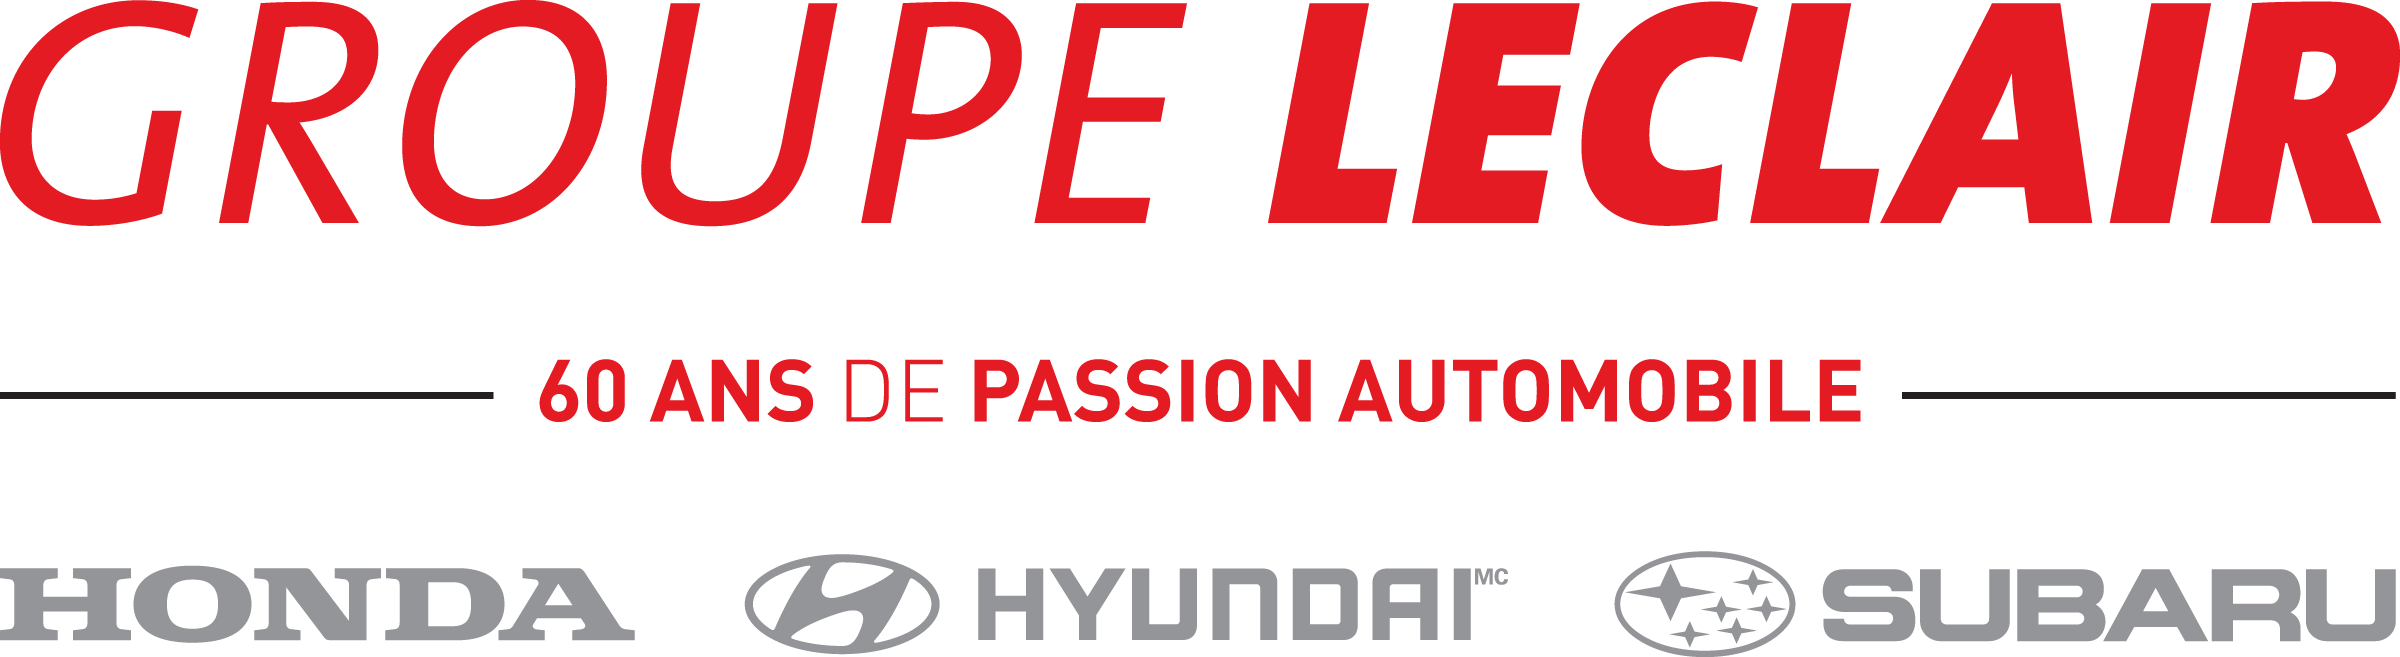 Groupe Leclair "60 ans de passion automobile" Logo. (medium)